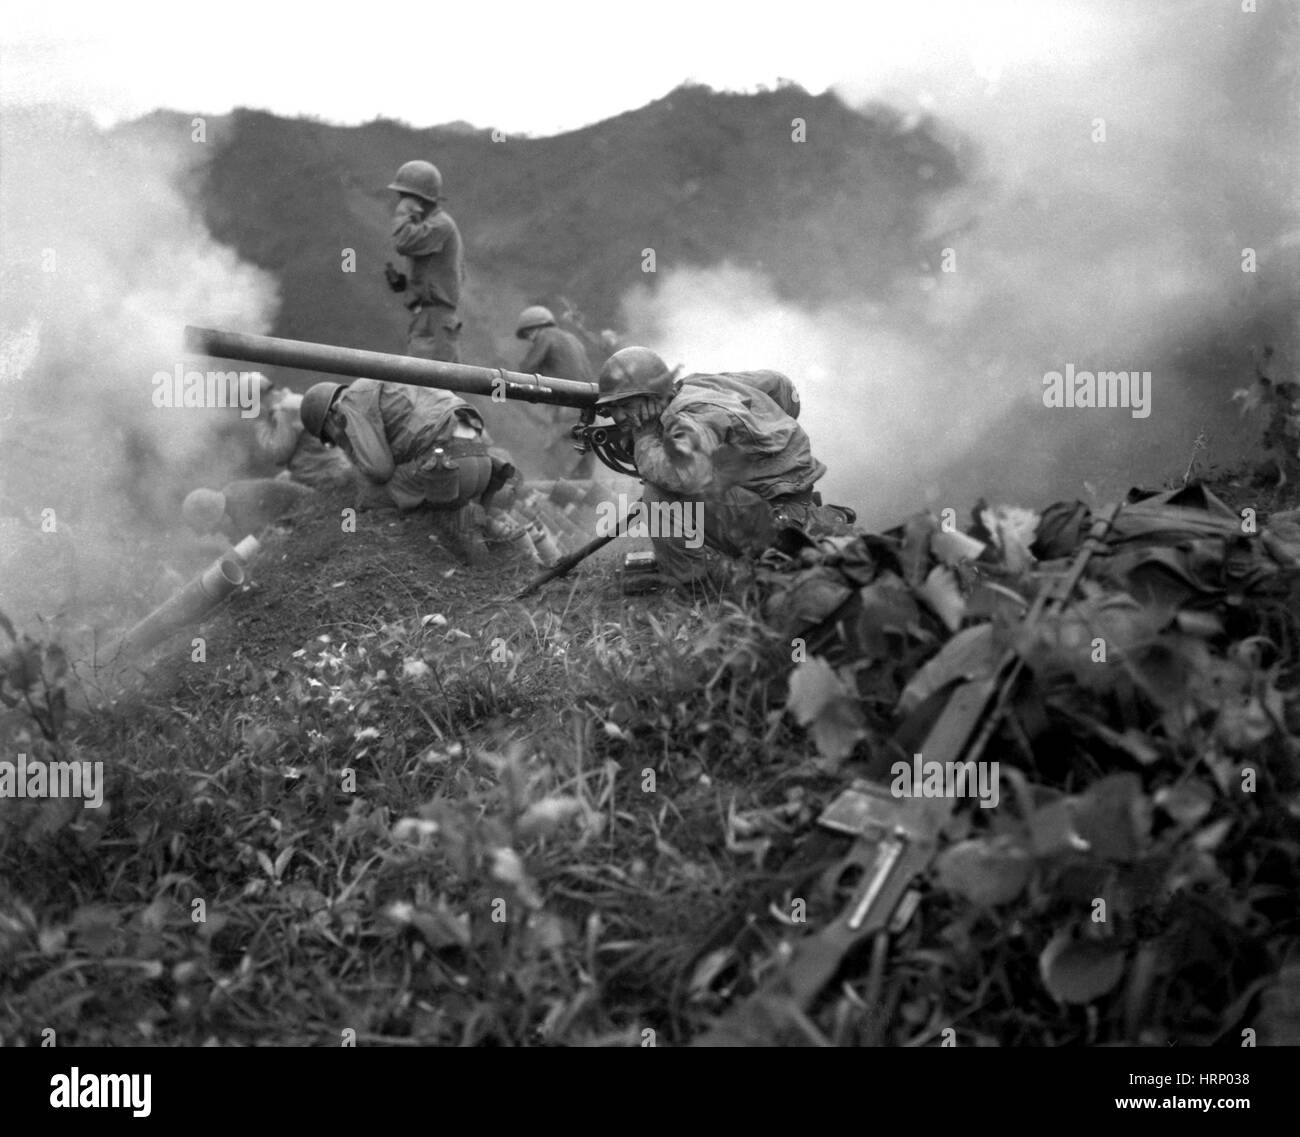 Guerre de Corée, l'équipage d'artillerie, 1951 Banque D'Images